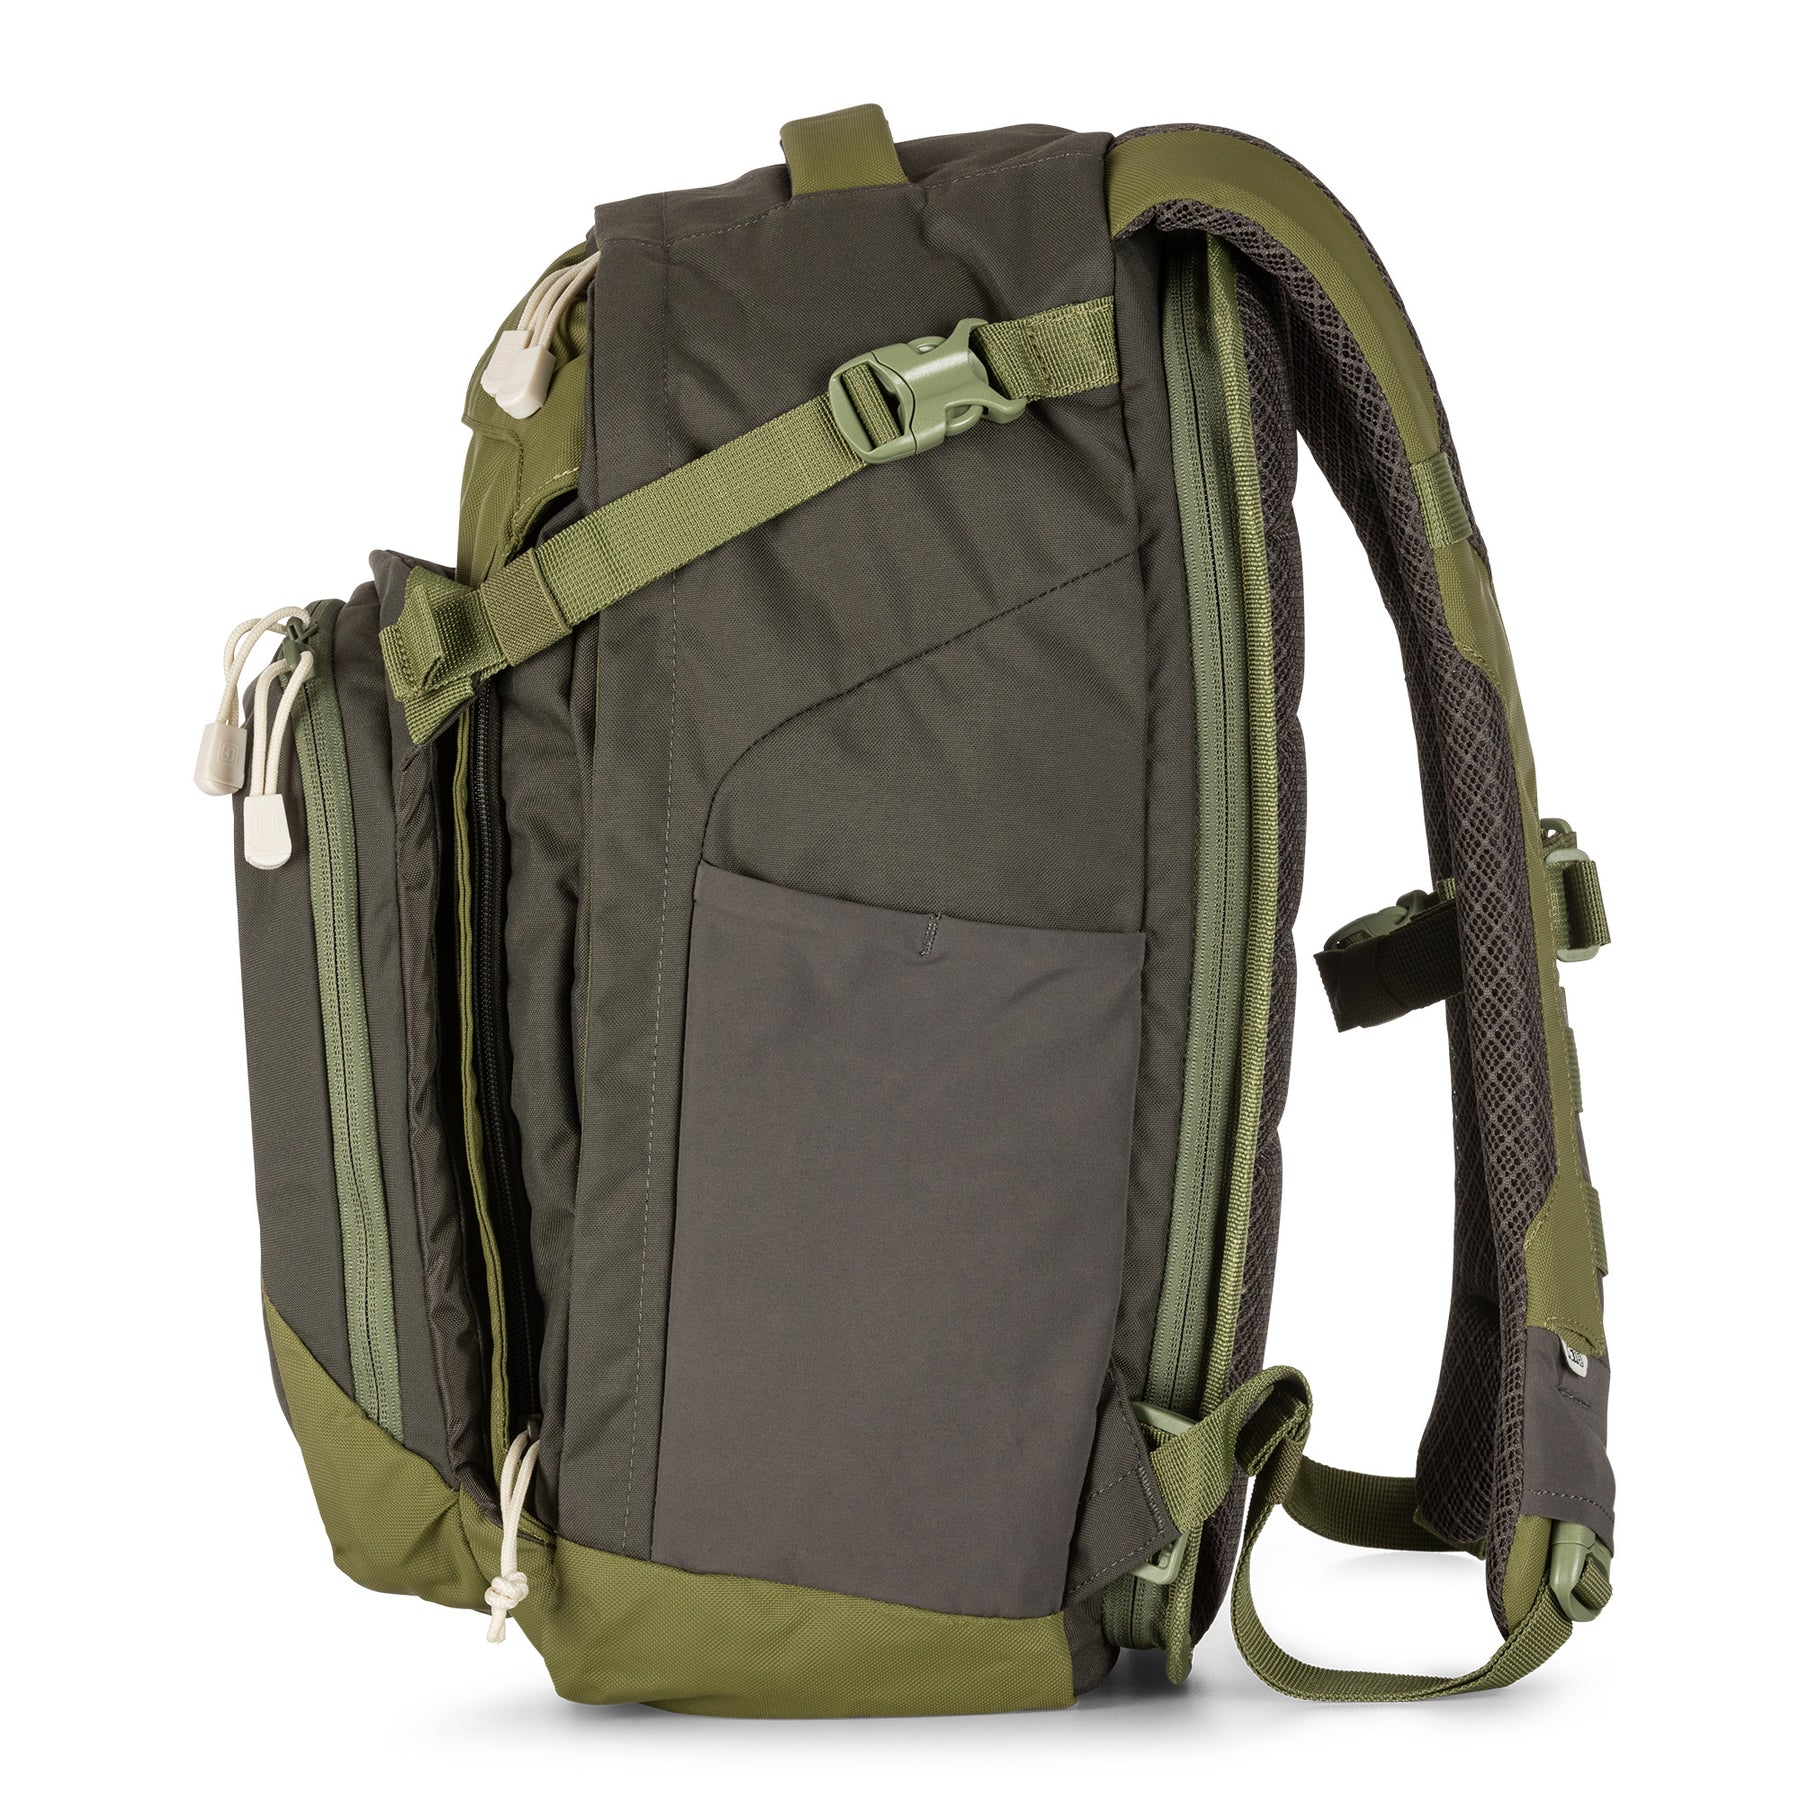 Zaino COVRT18 di 5.11 grenade (verde) - vista laterale con cinghie di compressione e tasca elastica per borraccia